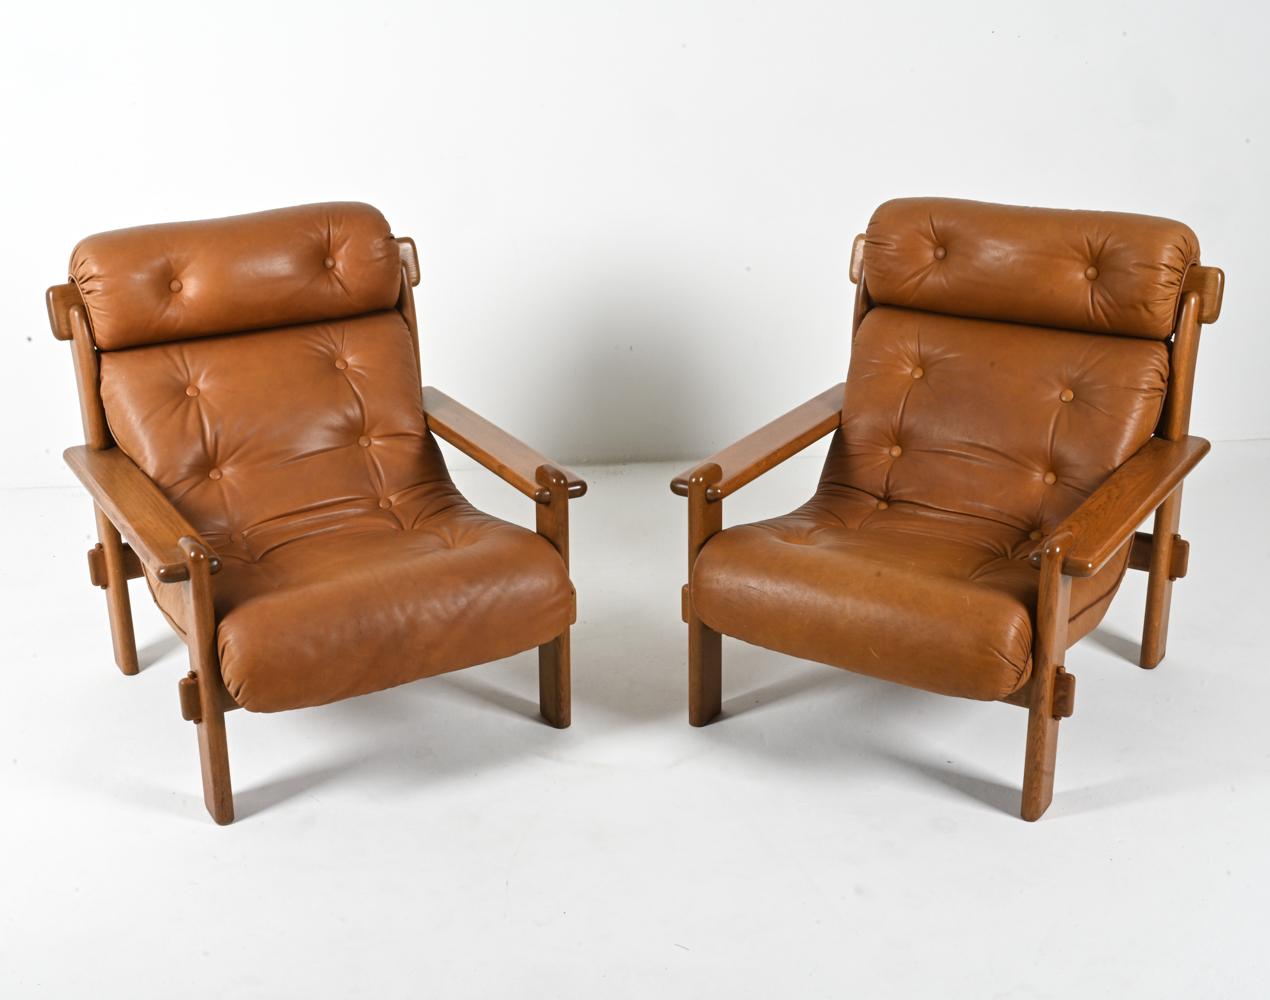 Voici une étonnante paire de chaises de salon brutalistes qui allient sans effort forme et fonction. Fabriquées en Europe dans les années 1970, ces chaises sont dotées d'un cadre solide en chêne massif. Les bras ouverts et les joints à mortaise